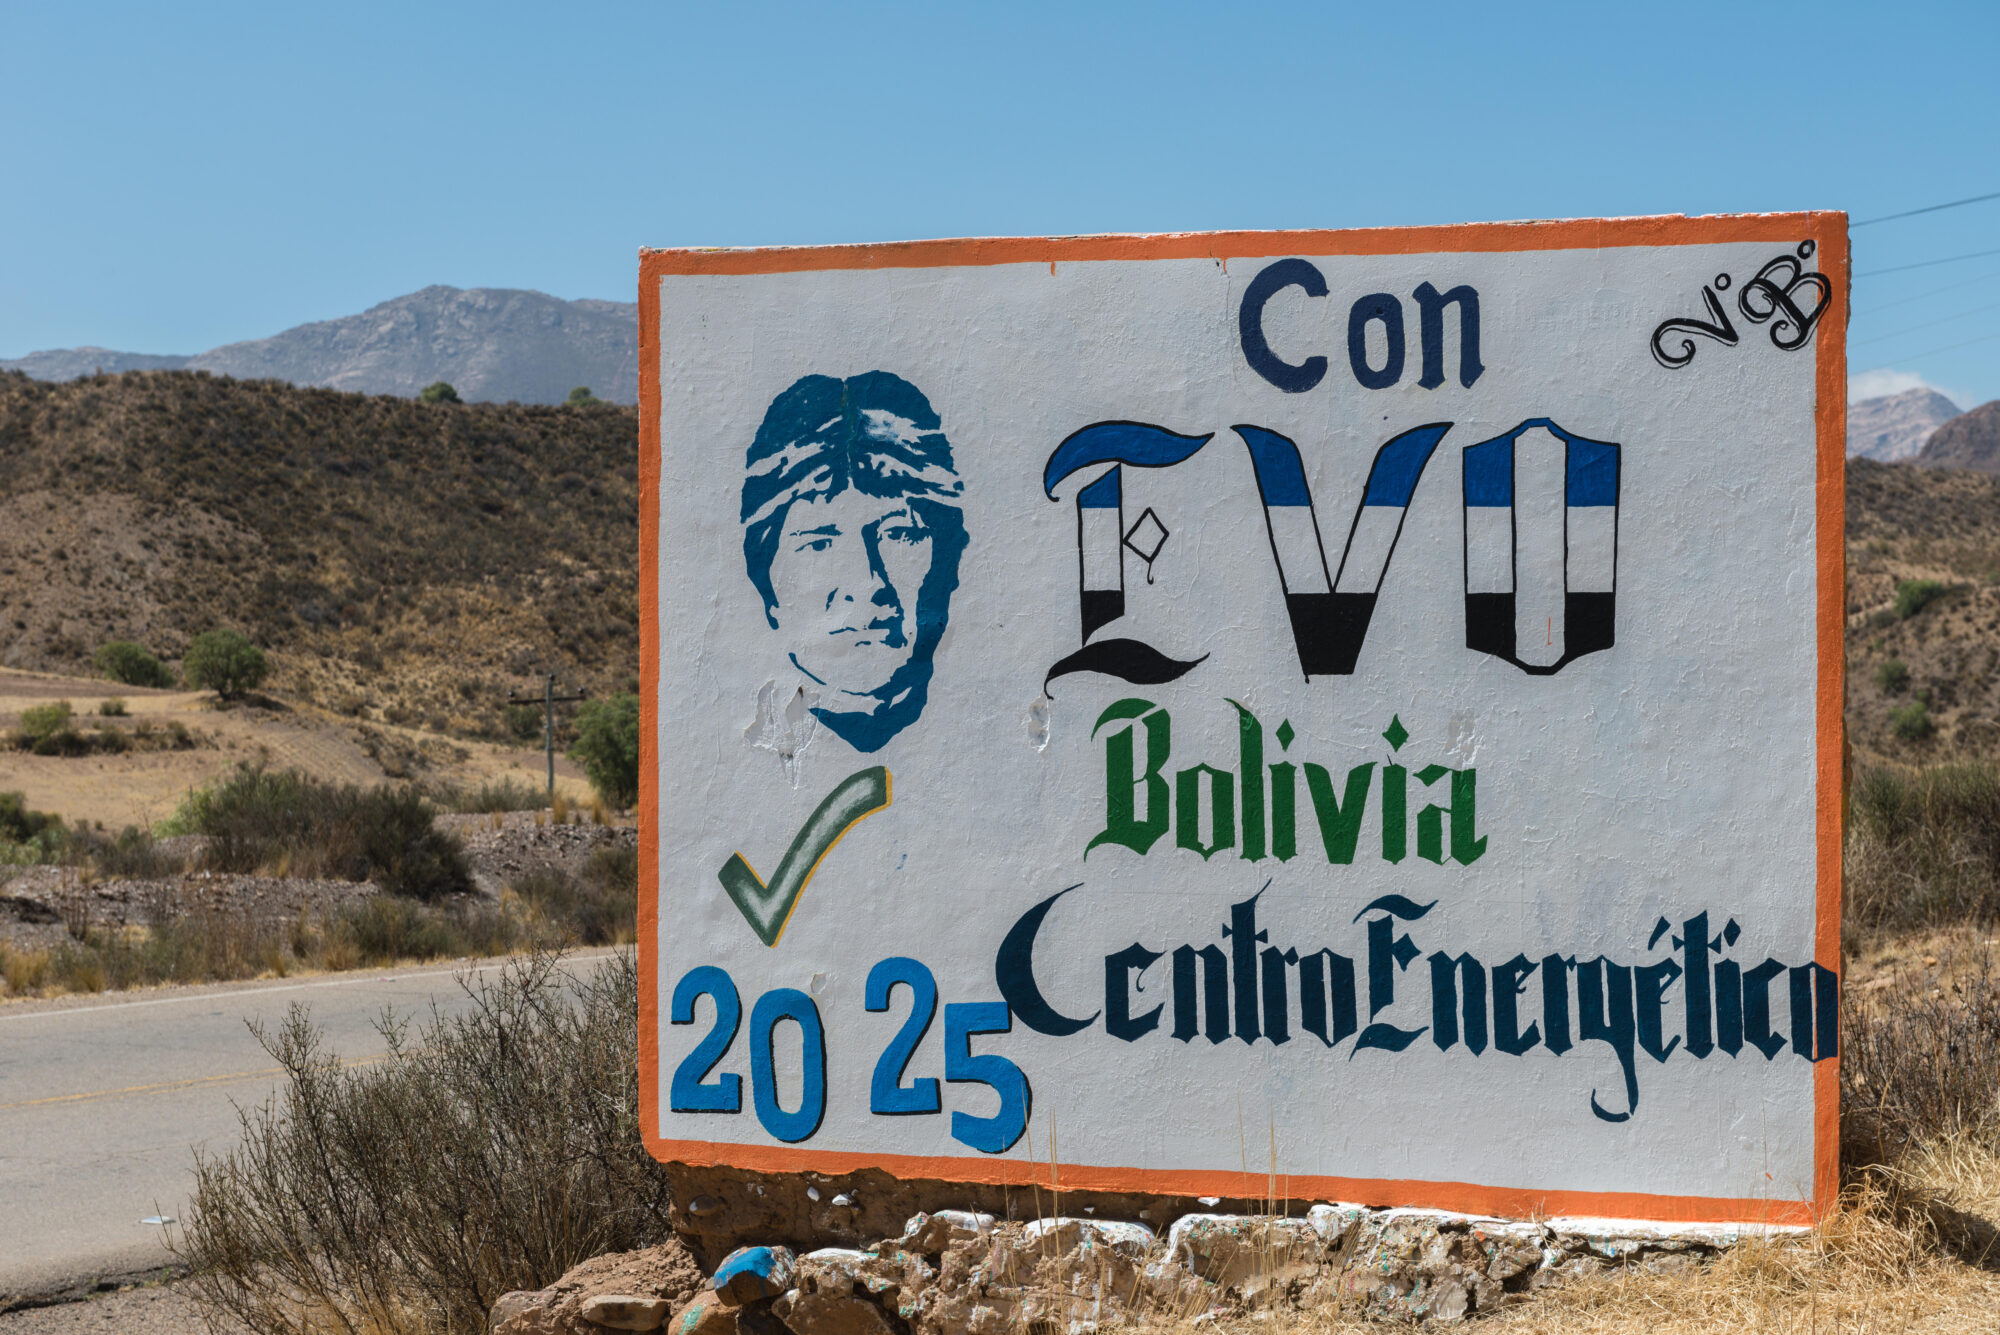 Pôster com o rosto de Evo Morales e a legenda "With Evo Bolivia energy centre 2025".